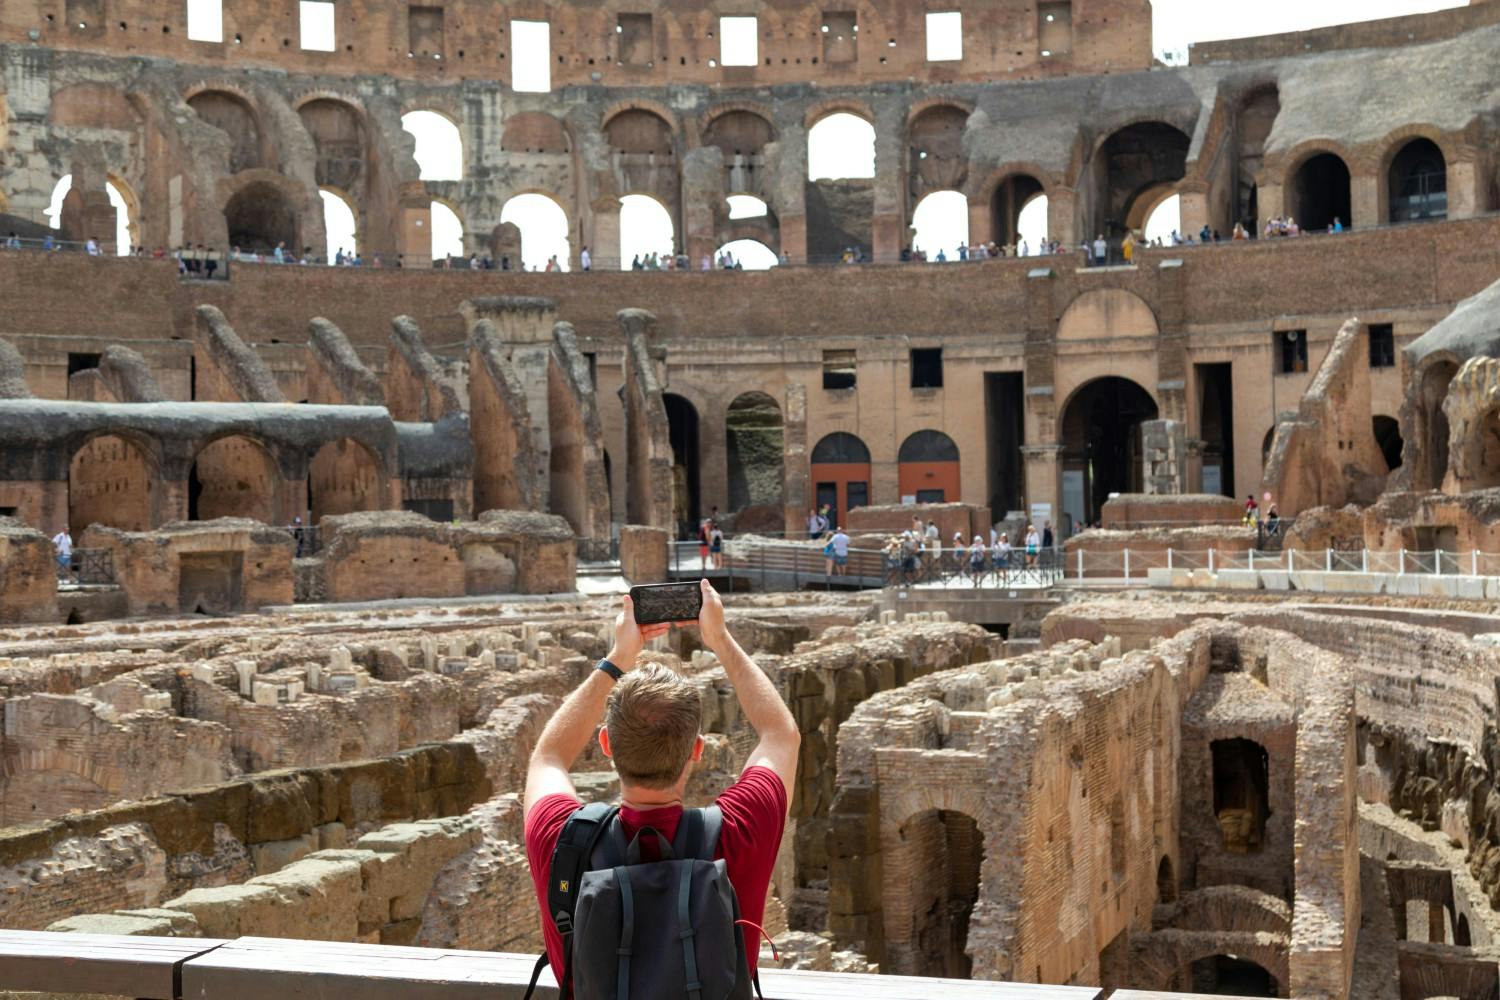 Italy_Rome_The_Colosseum_27_JPG.jpg